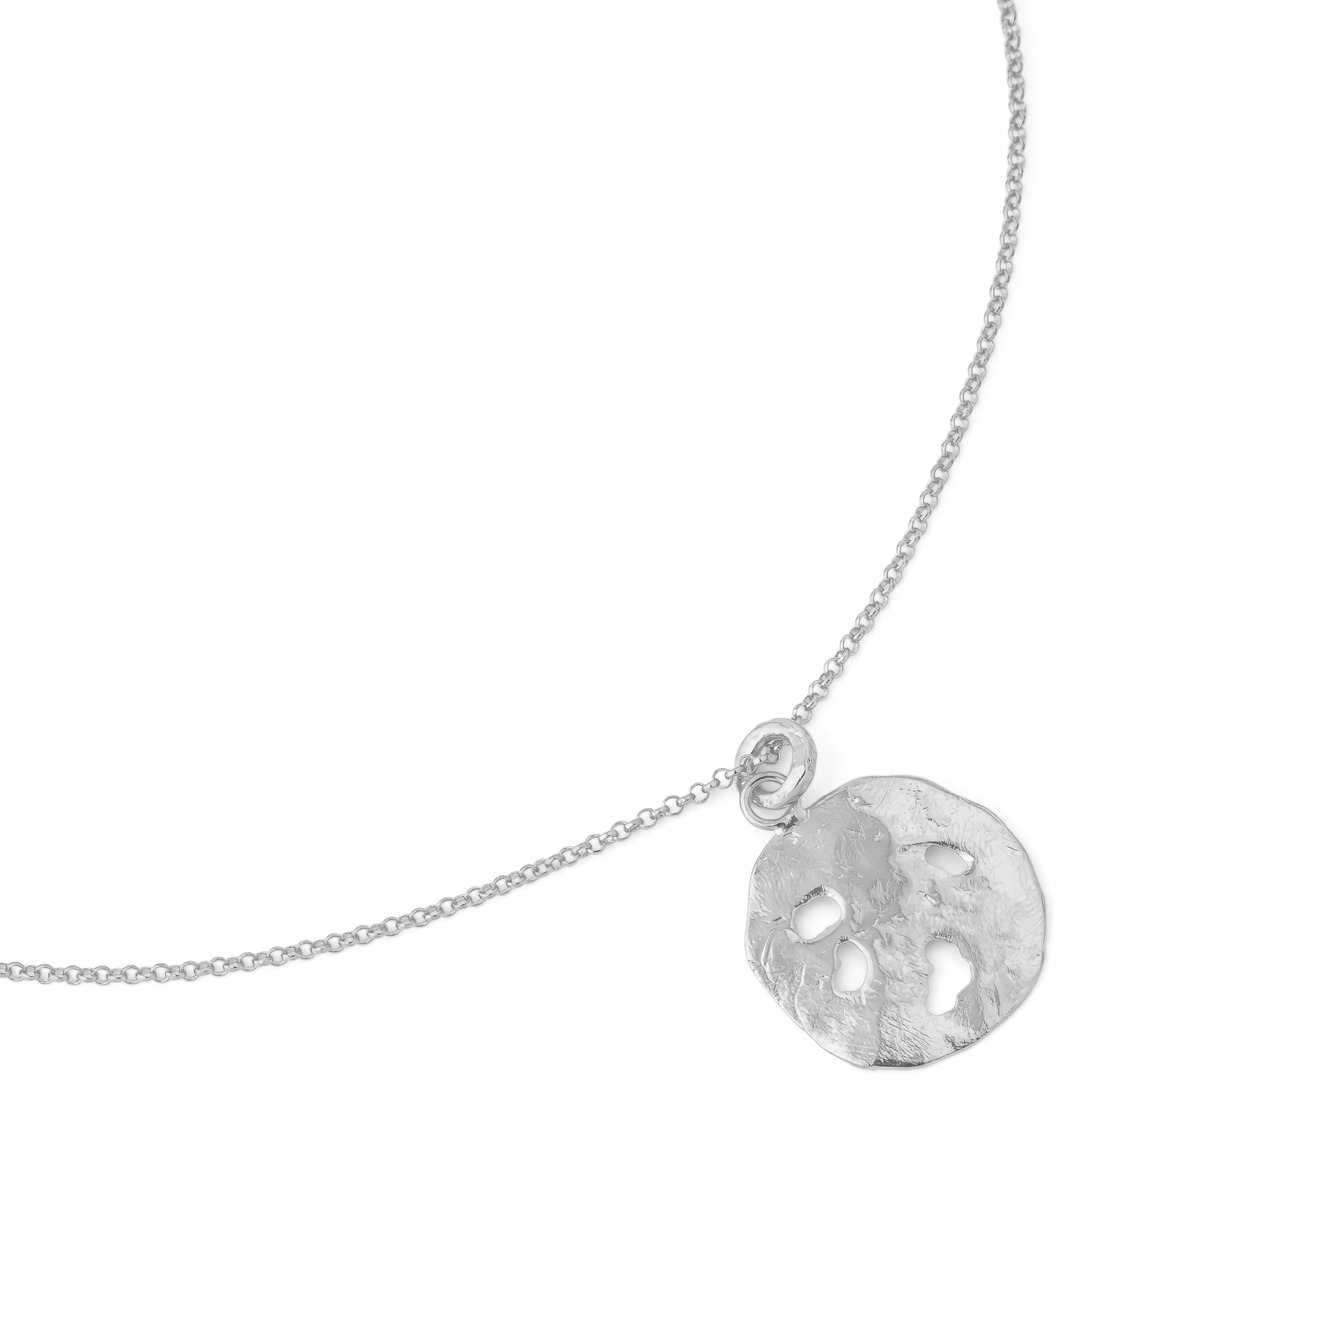 Sevenworlds Подвеска Pura Vida Medallion из бронзы с серебряным покрытием sevenworlds колье из бронзы с серебряным покрытием lunula